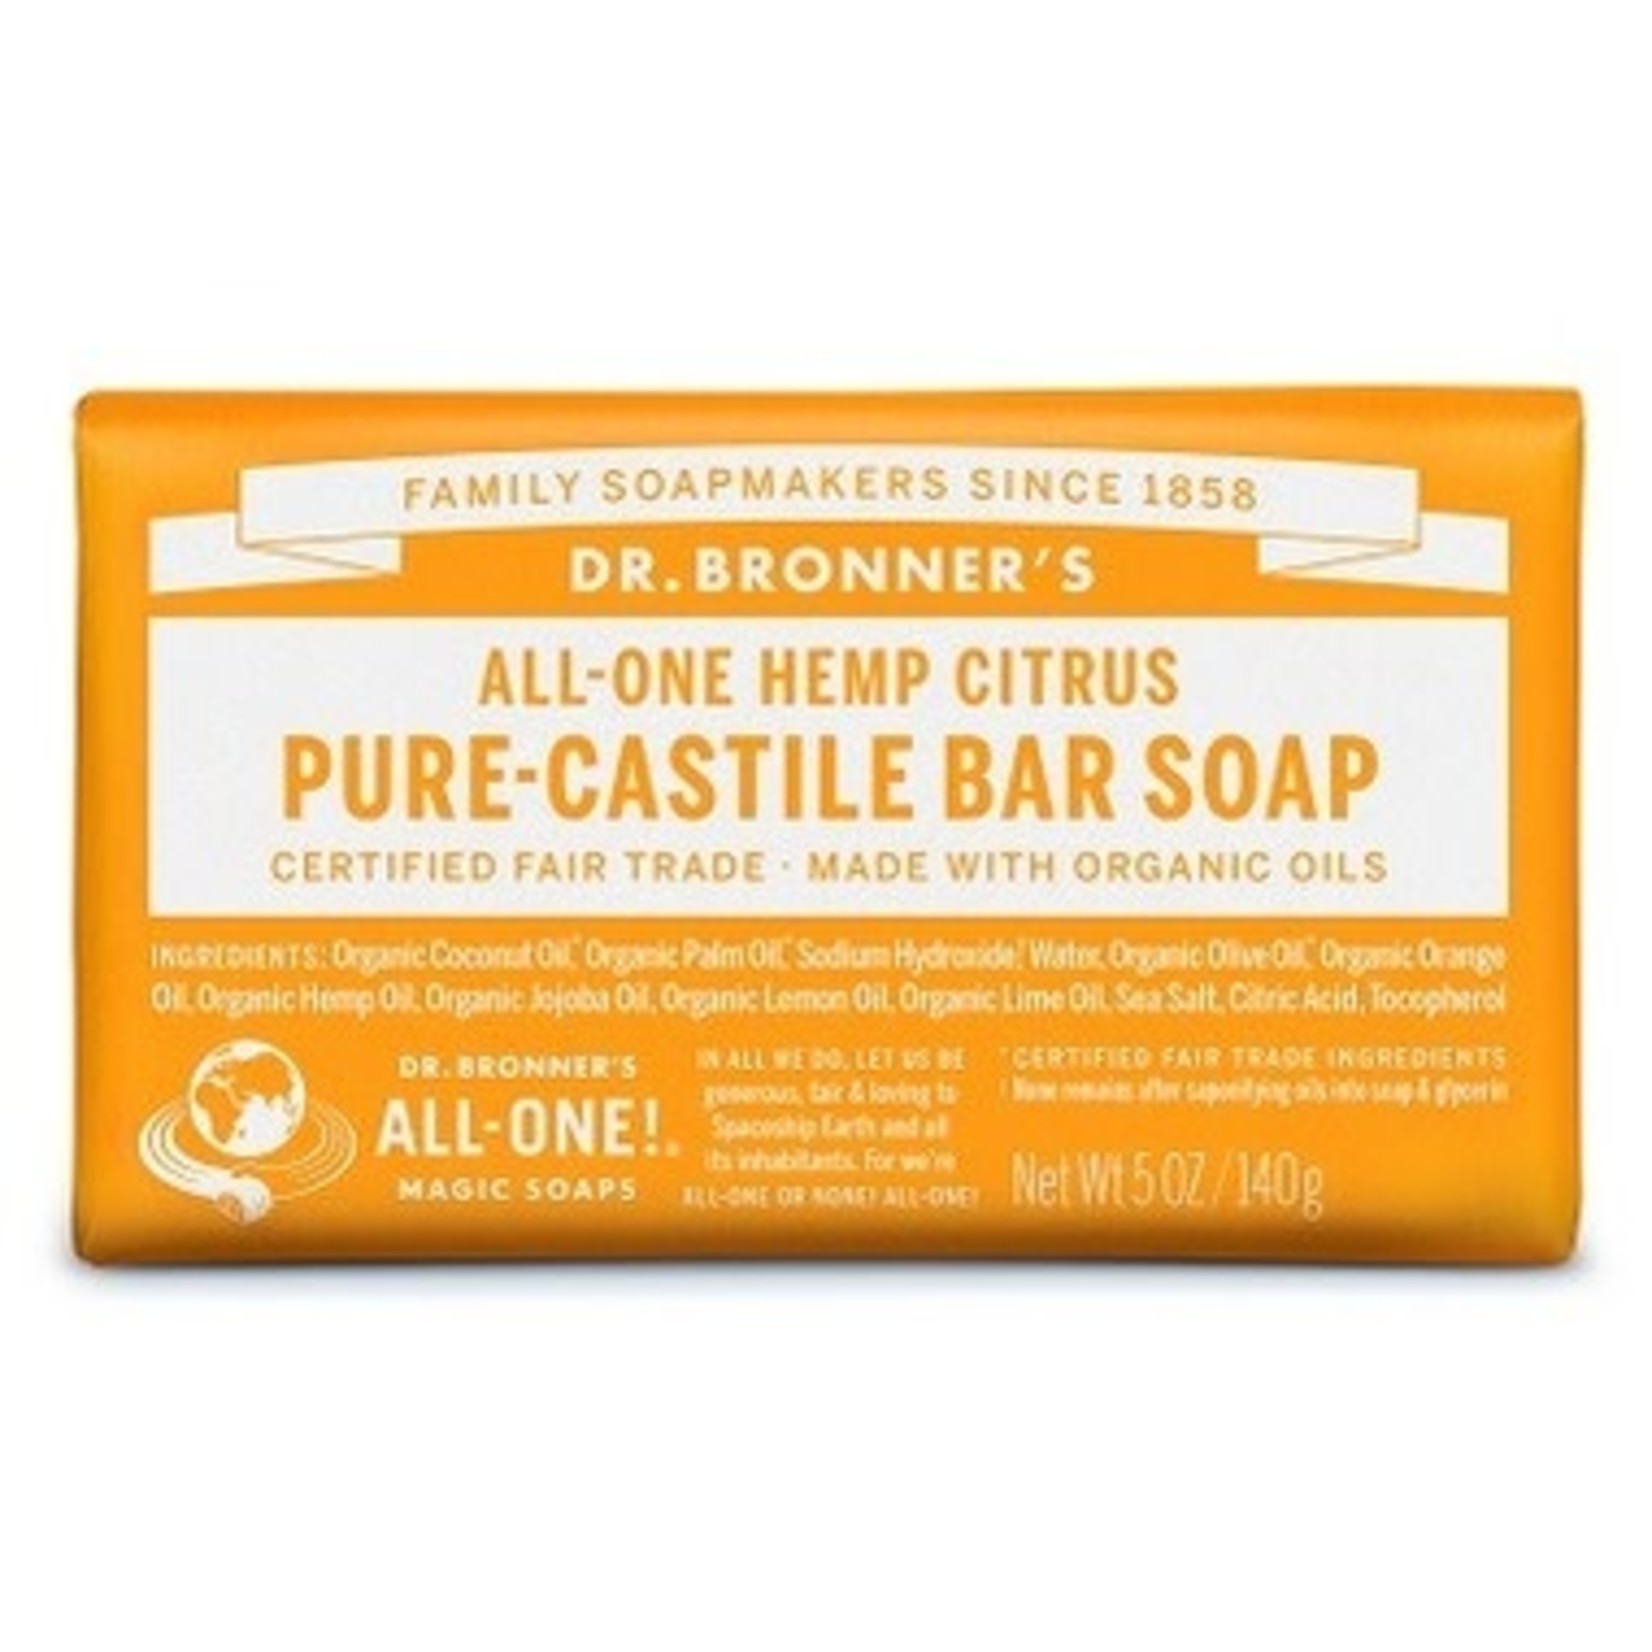 DR. BRONNER'S PURE CASTILE SOAP - CITRUS